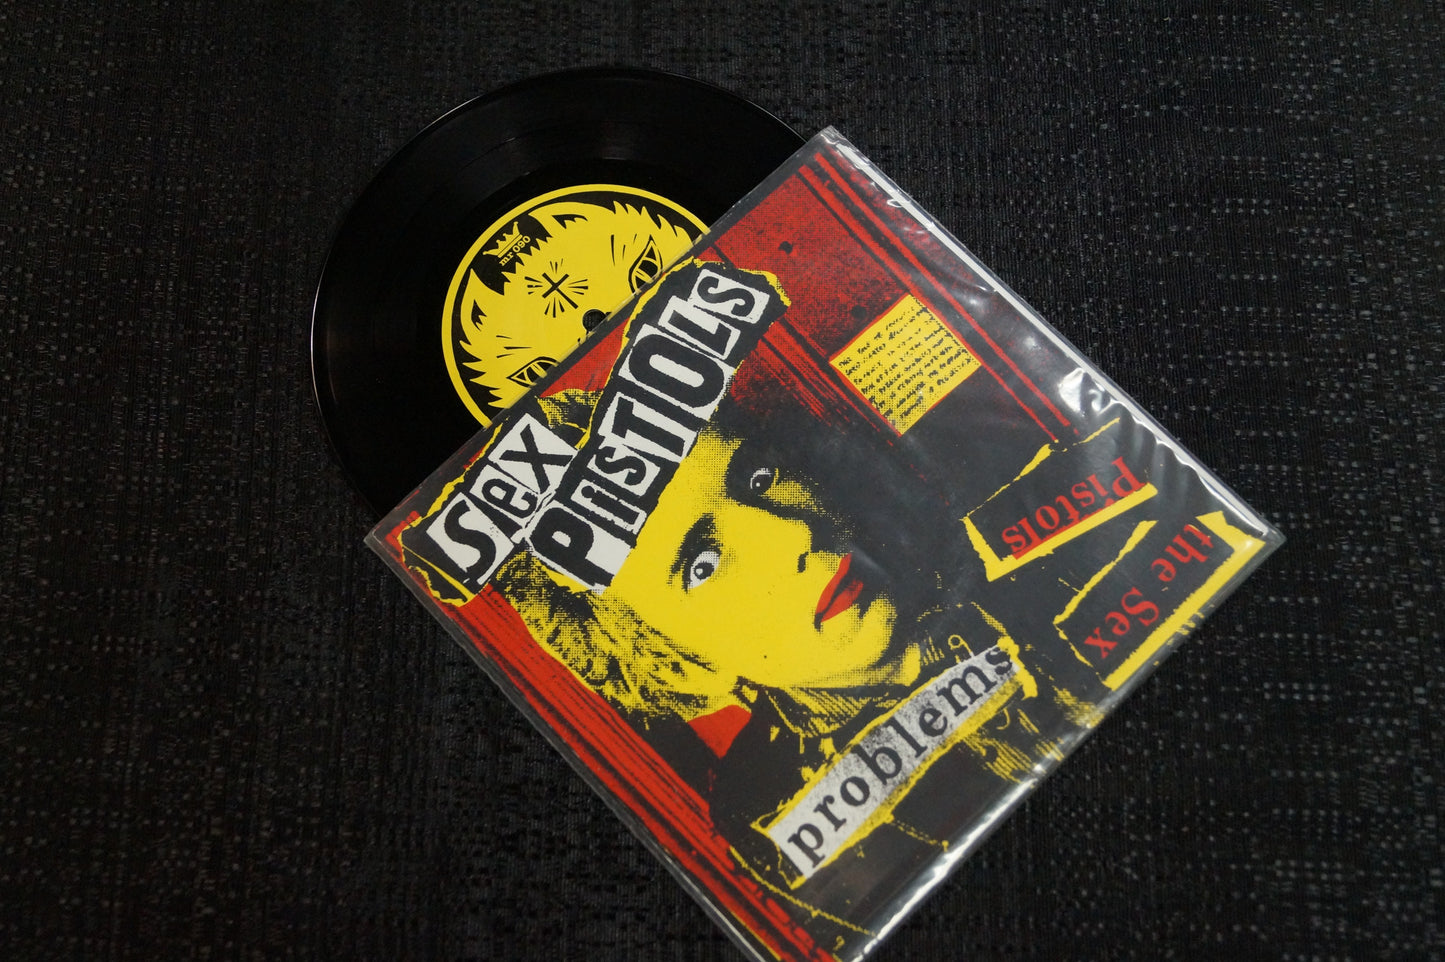 Sex Pistols/The Curse "Split Album" 1998 Colored Vinyl Art By Kozik